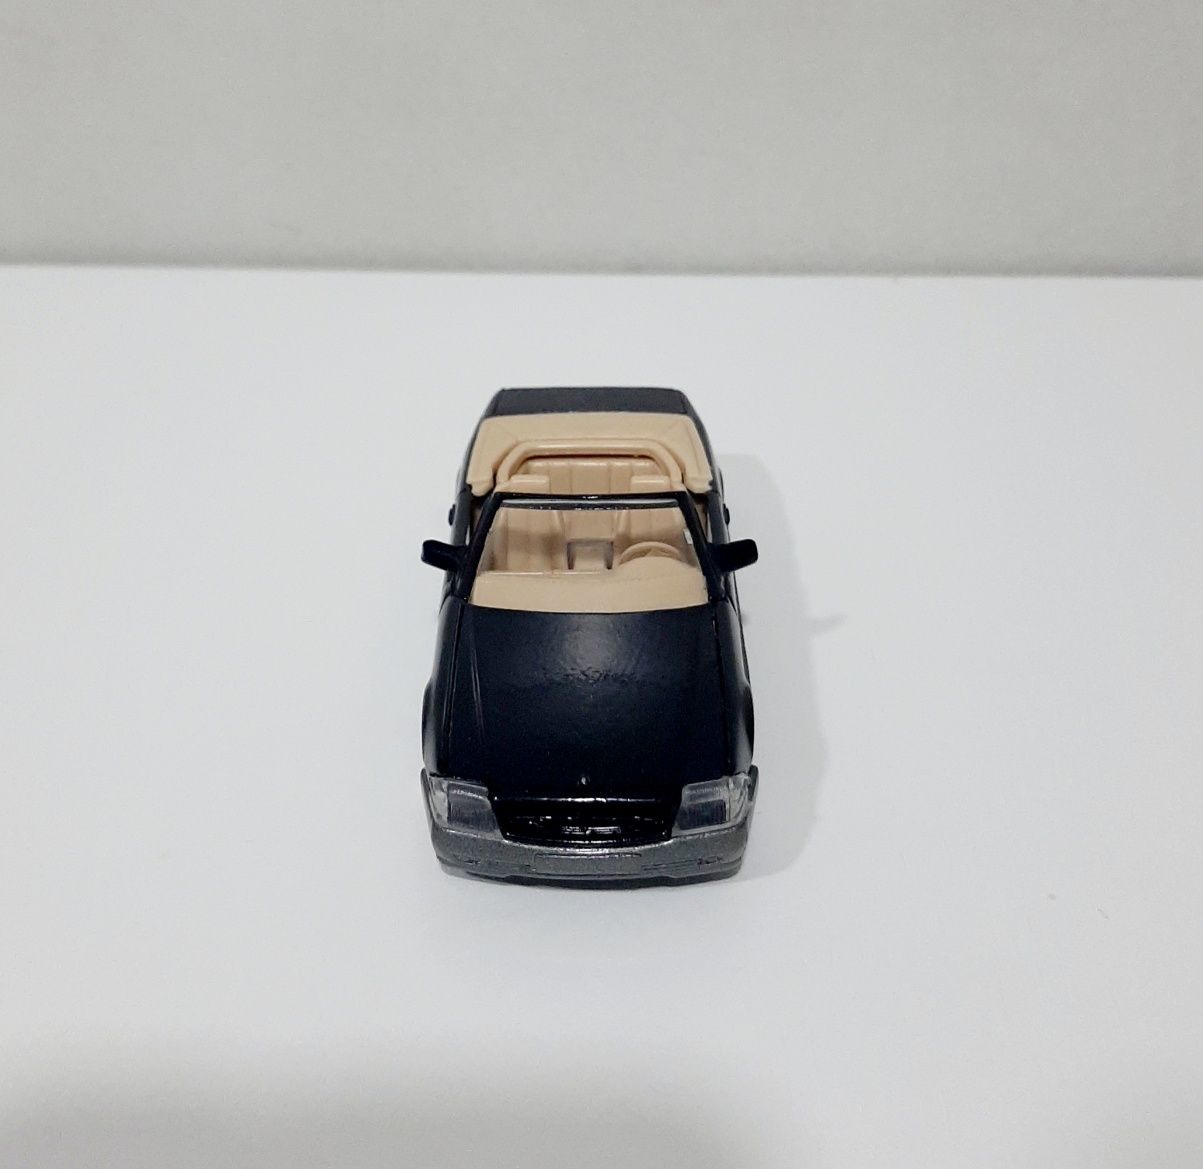 Miniatura Solido Mercedes 500SL